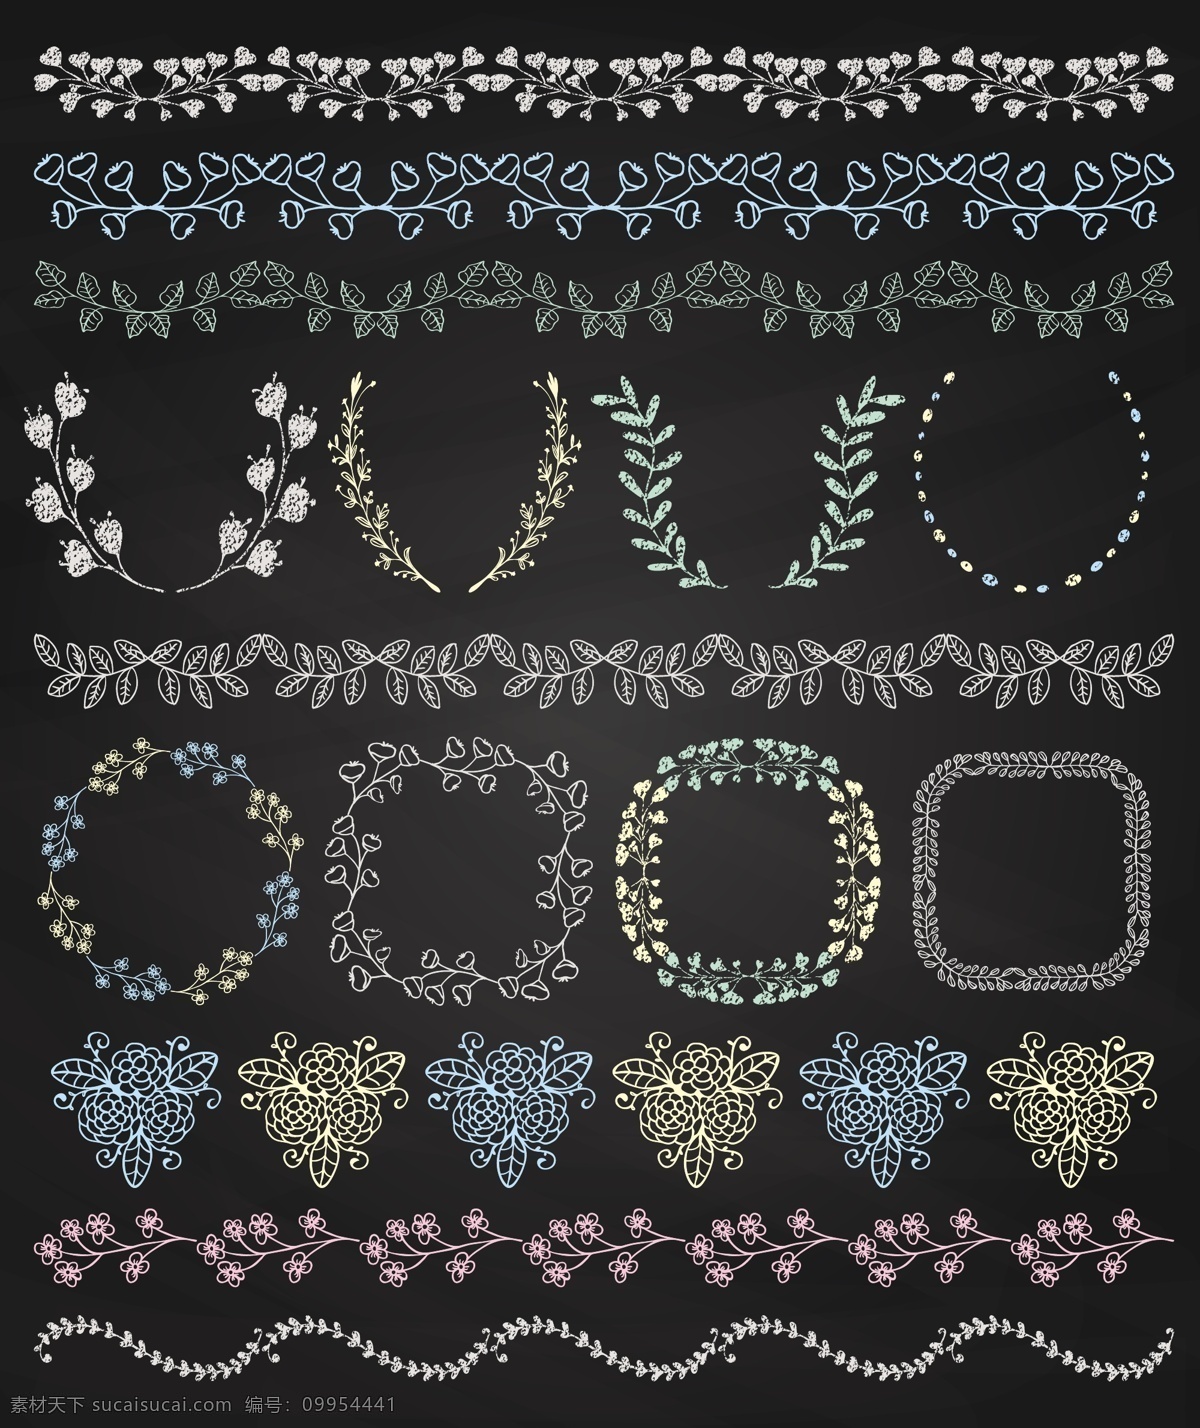 彩色 花纹 条 框架 矢量 心型 花卉 花边 边条 矢量图 eps格式 黑色